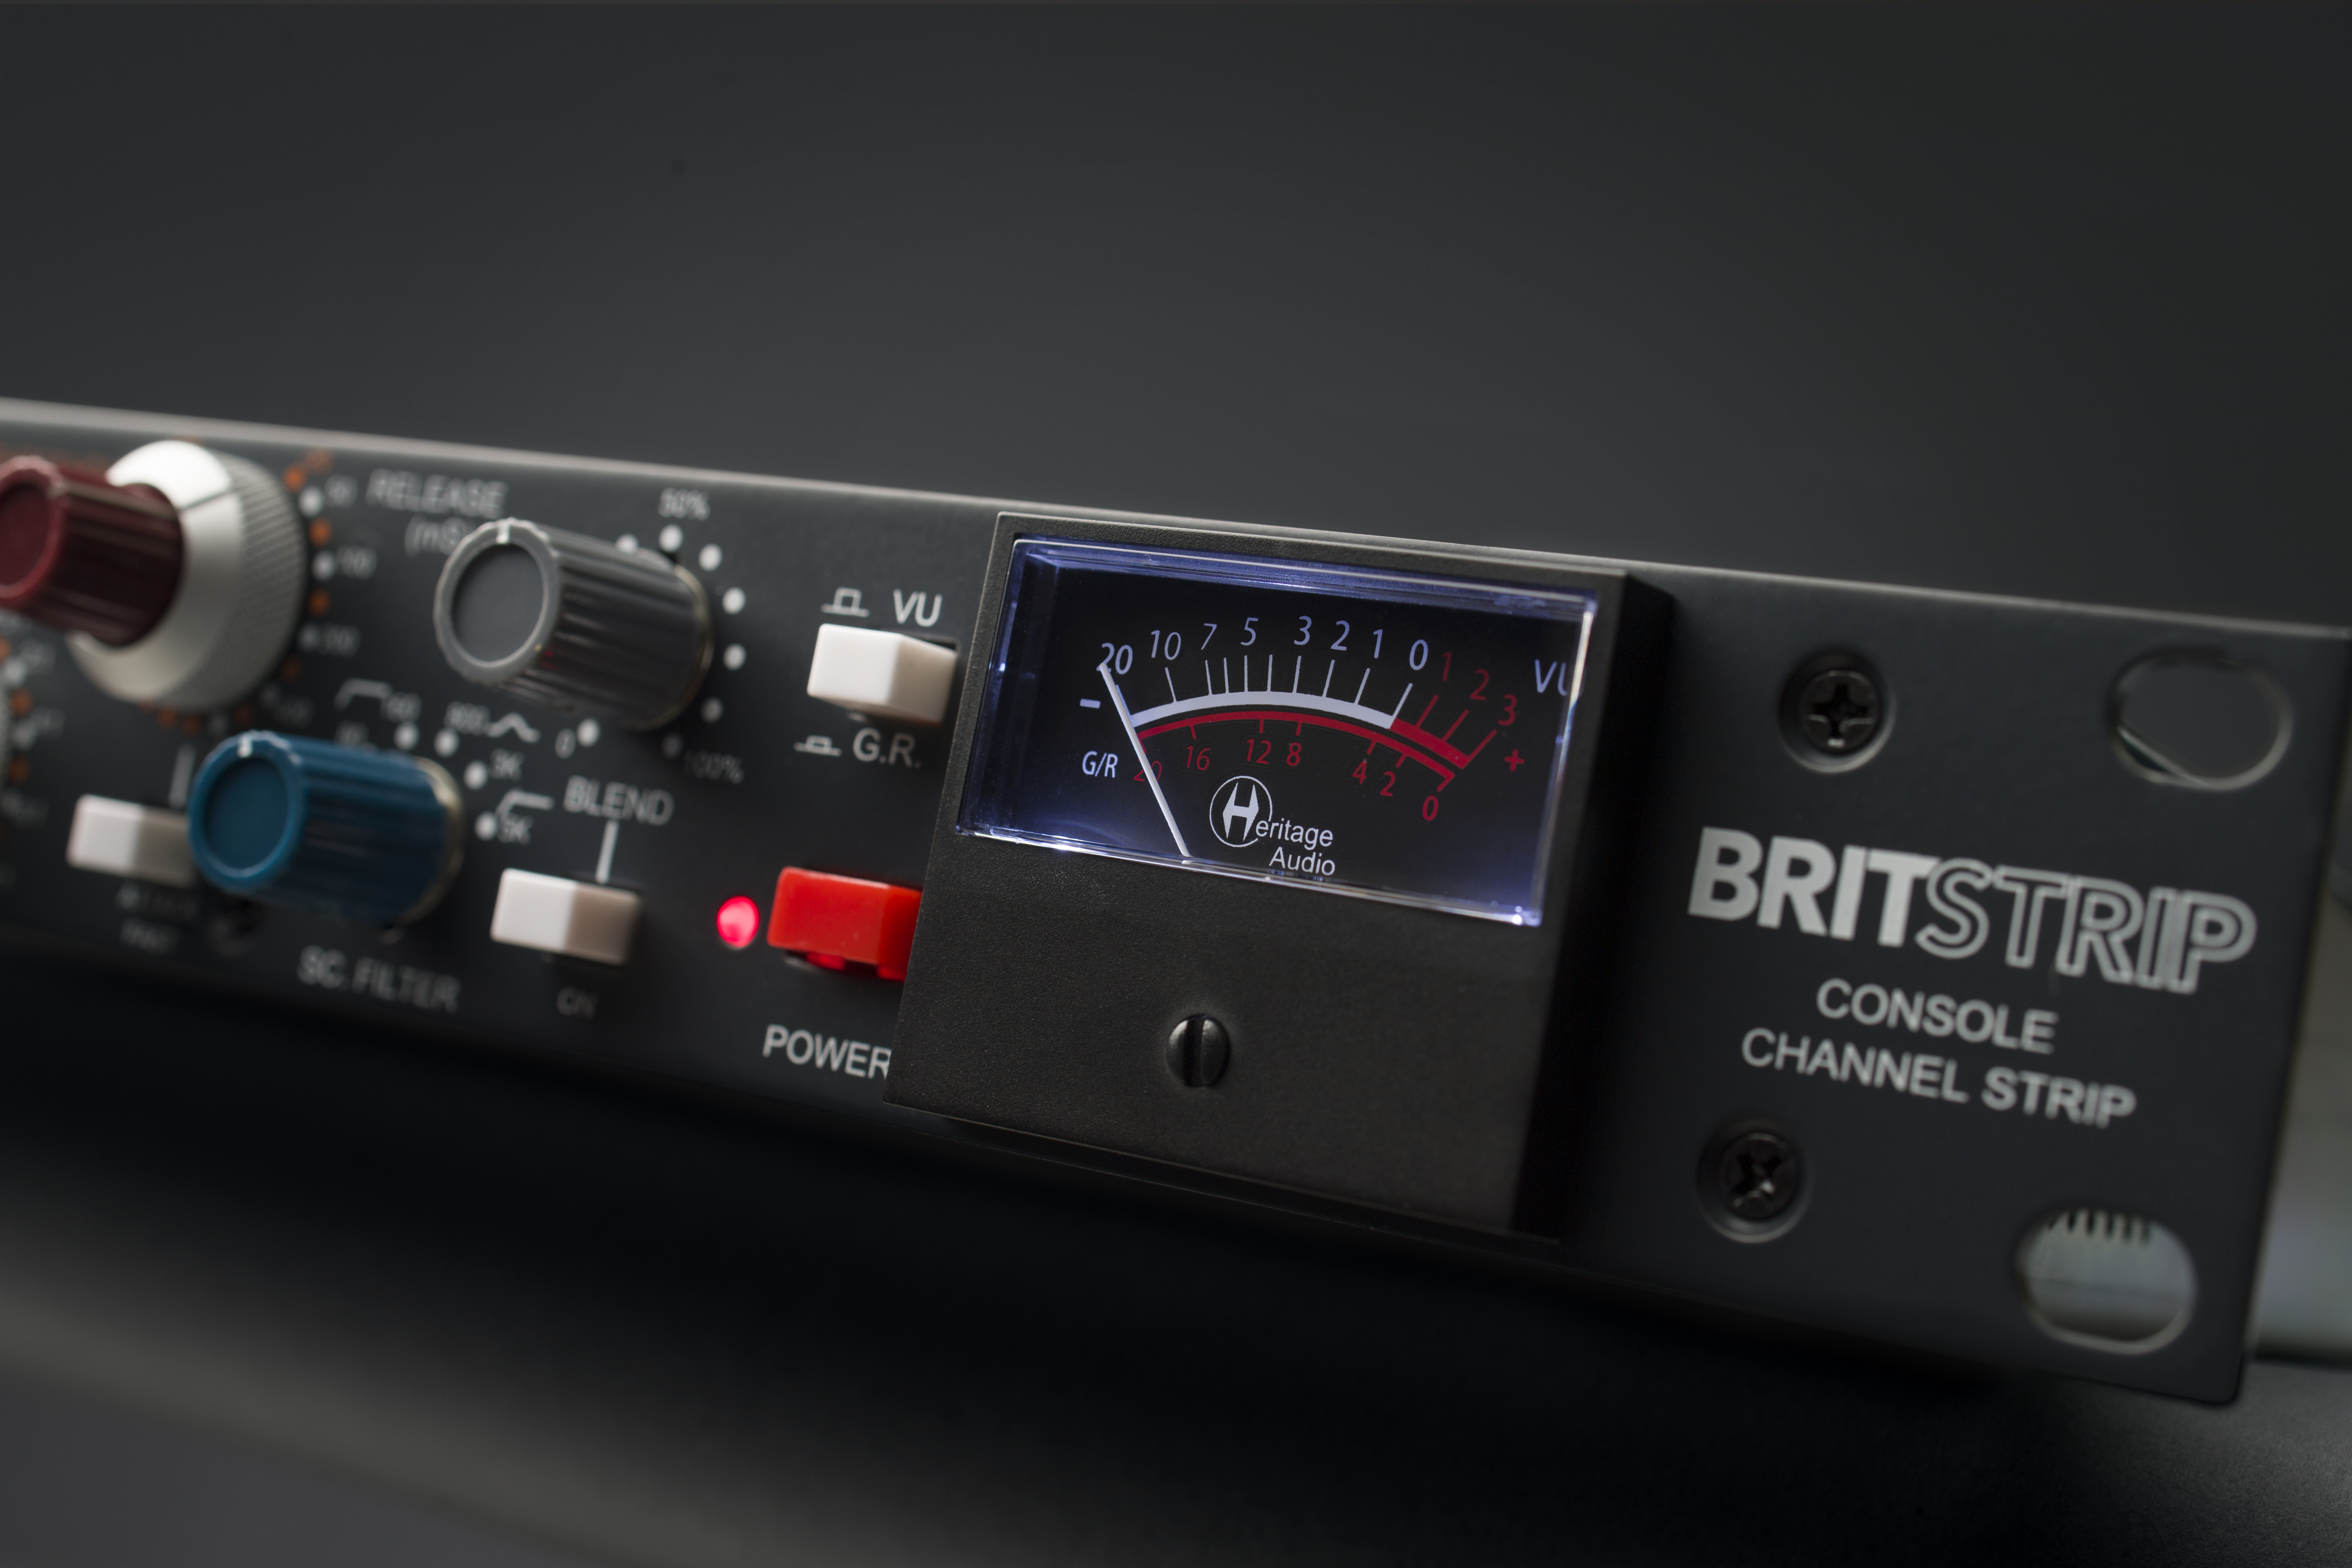 BritStrip hardware console channel strip